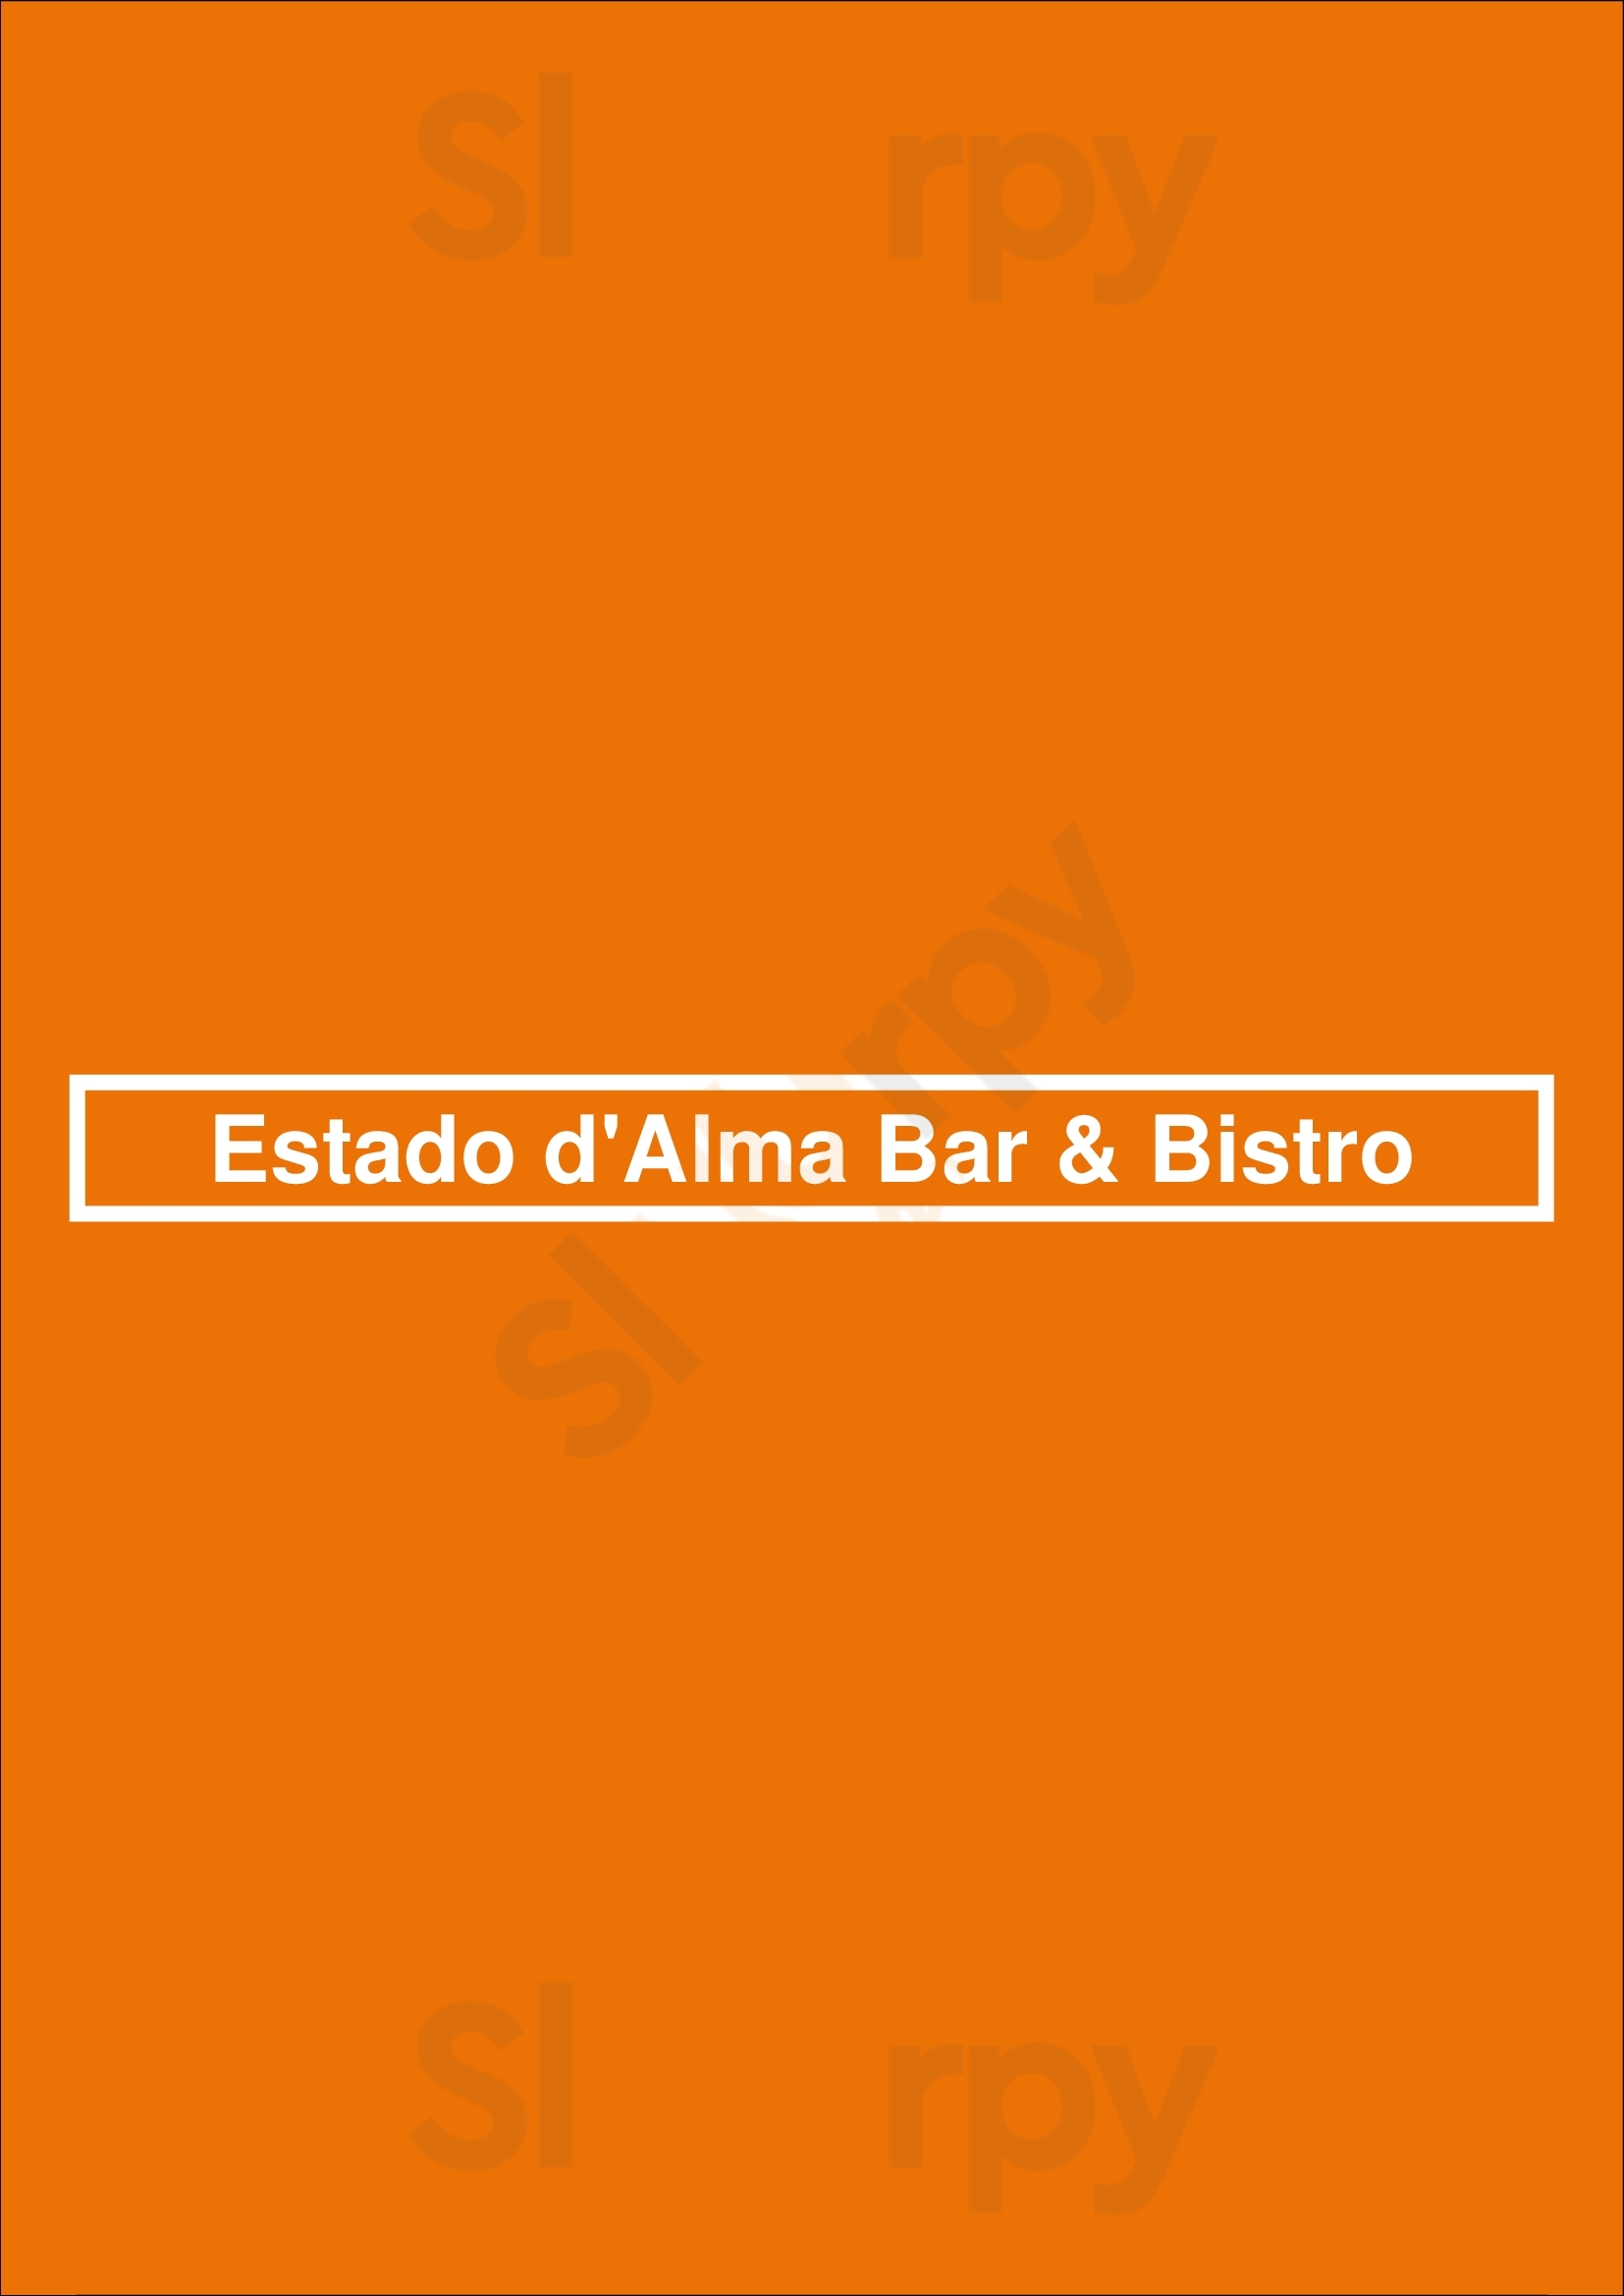 Estado D'alma Bar & Bistro Lisboa Menu - 1